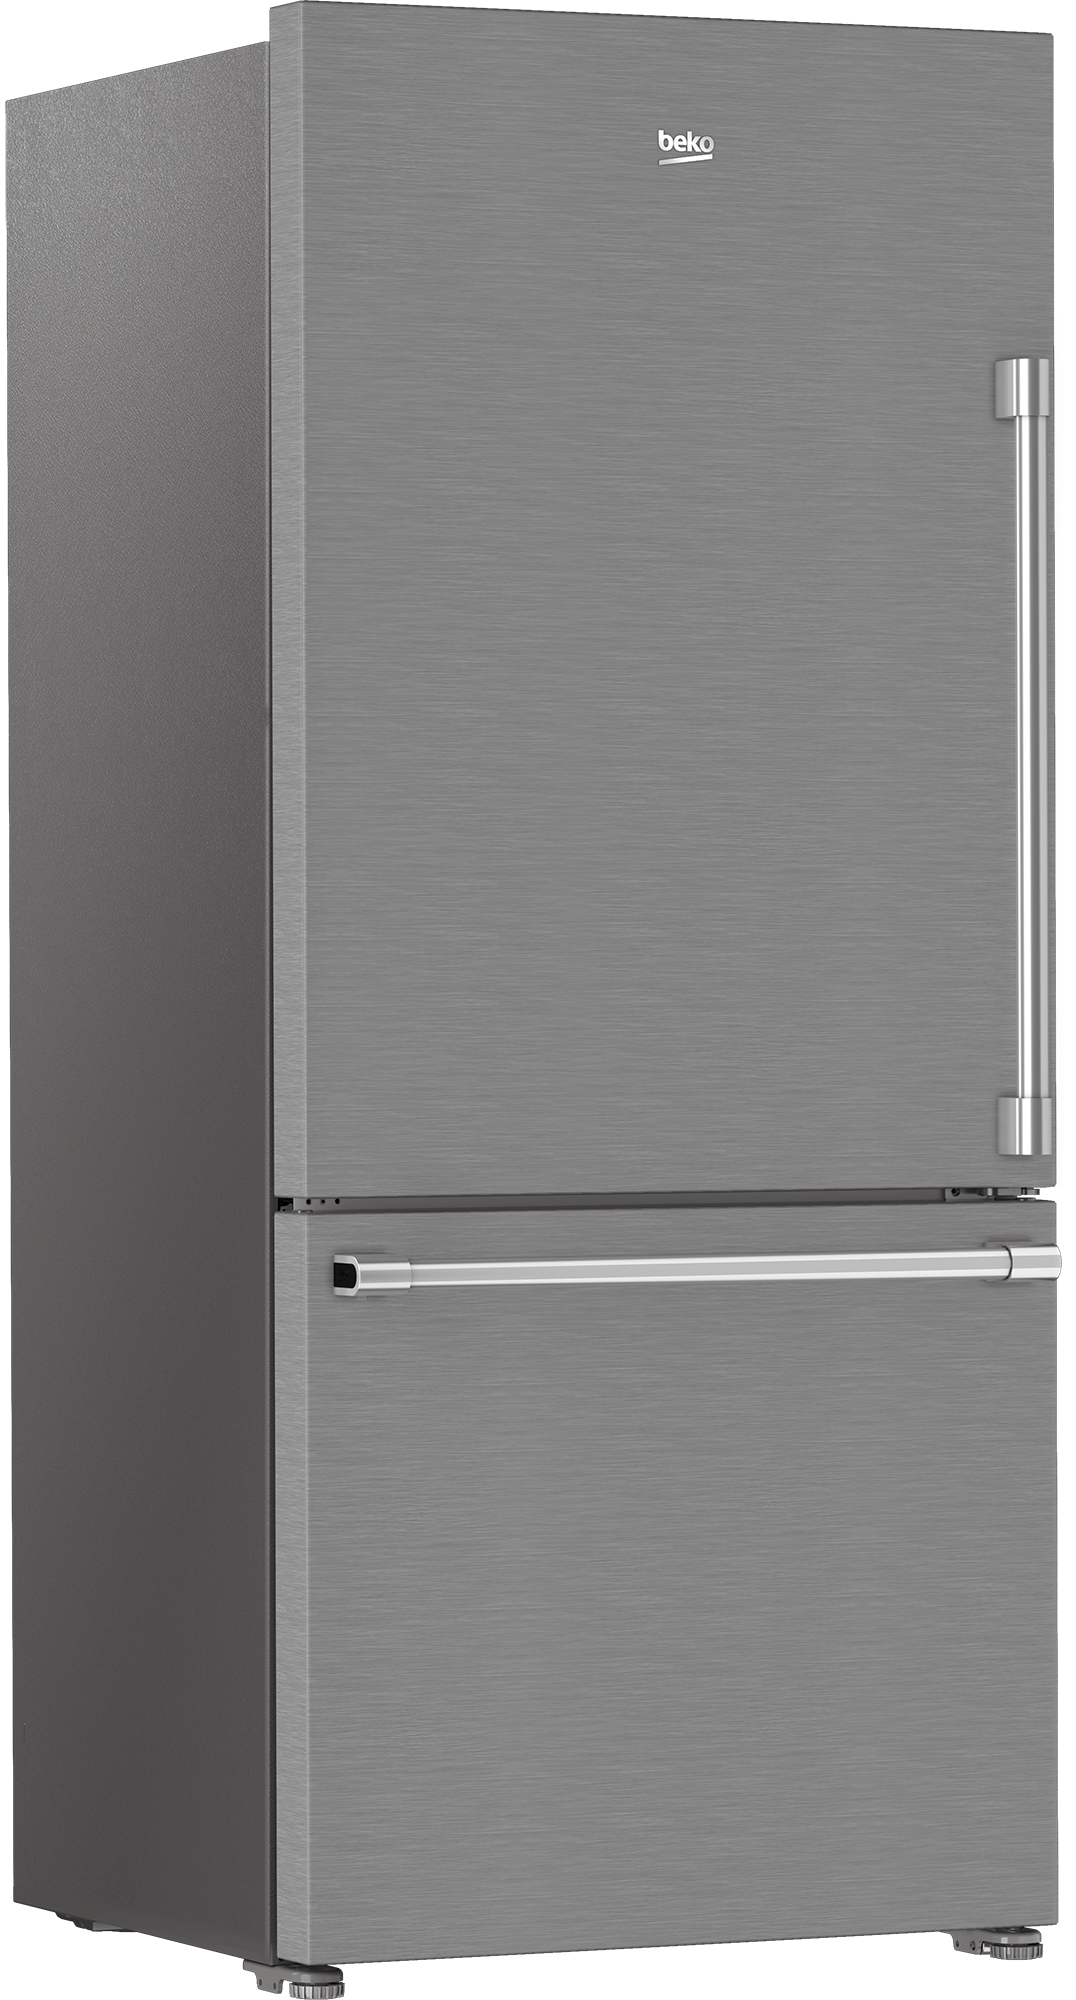 Beko BFBD30216SSIML 30" Bottom Freezer Refrigerator With Harvestfresh